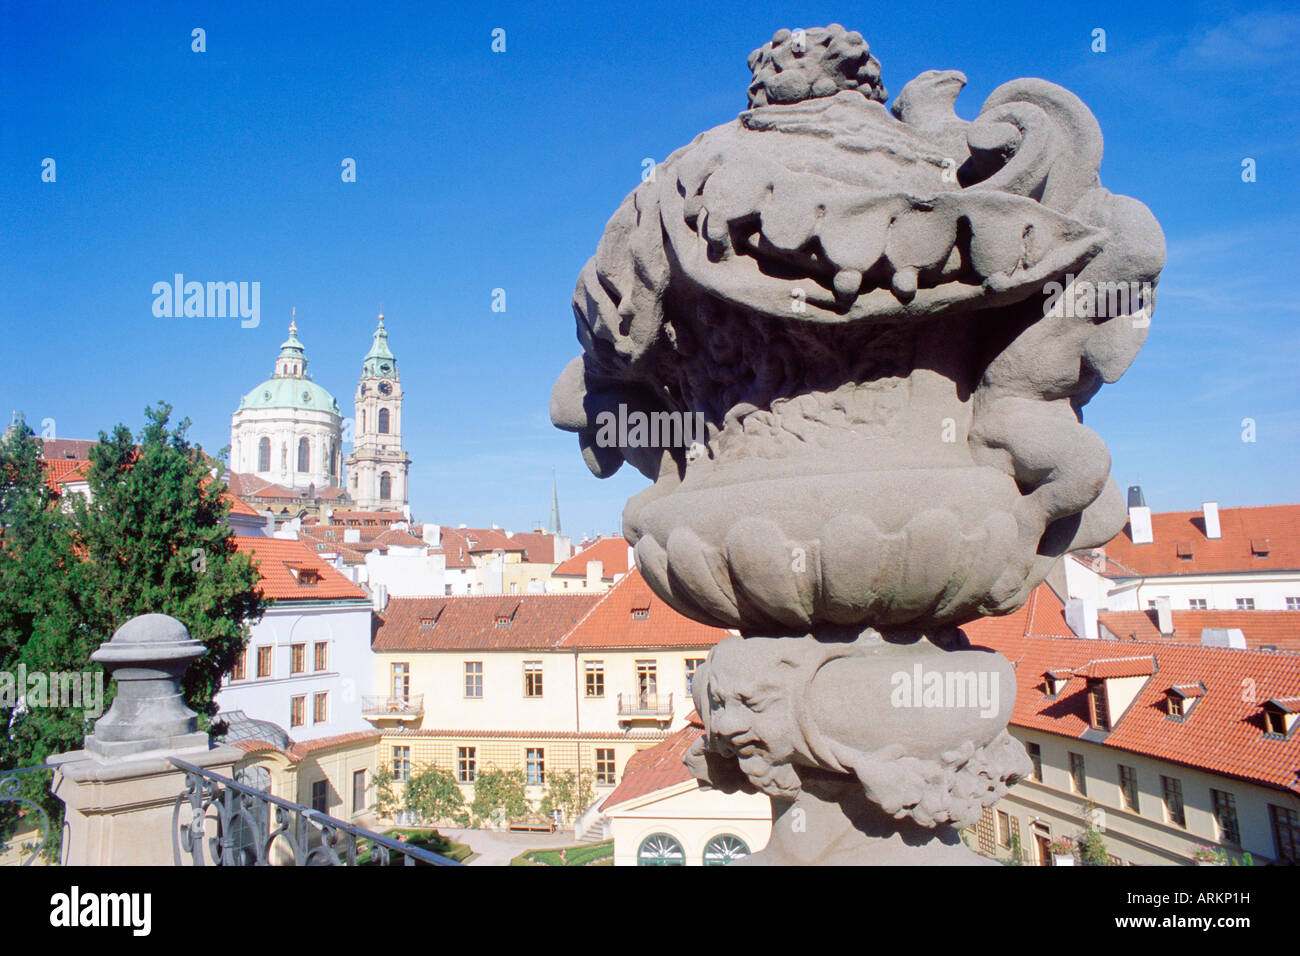 Statua barocca di Vrtbovska Garden con il barocco della chiesa di San Nicola in background, Mala Strana, Praga, Repubblica Ceca Foto Stock